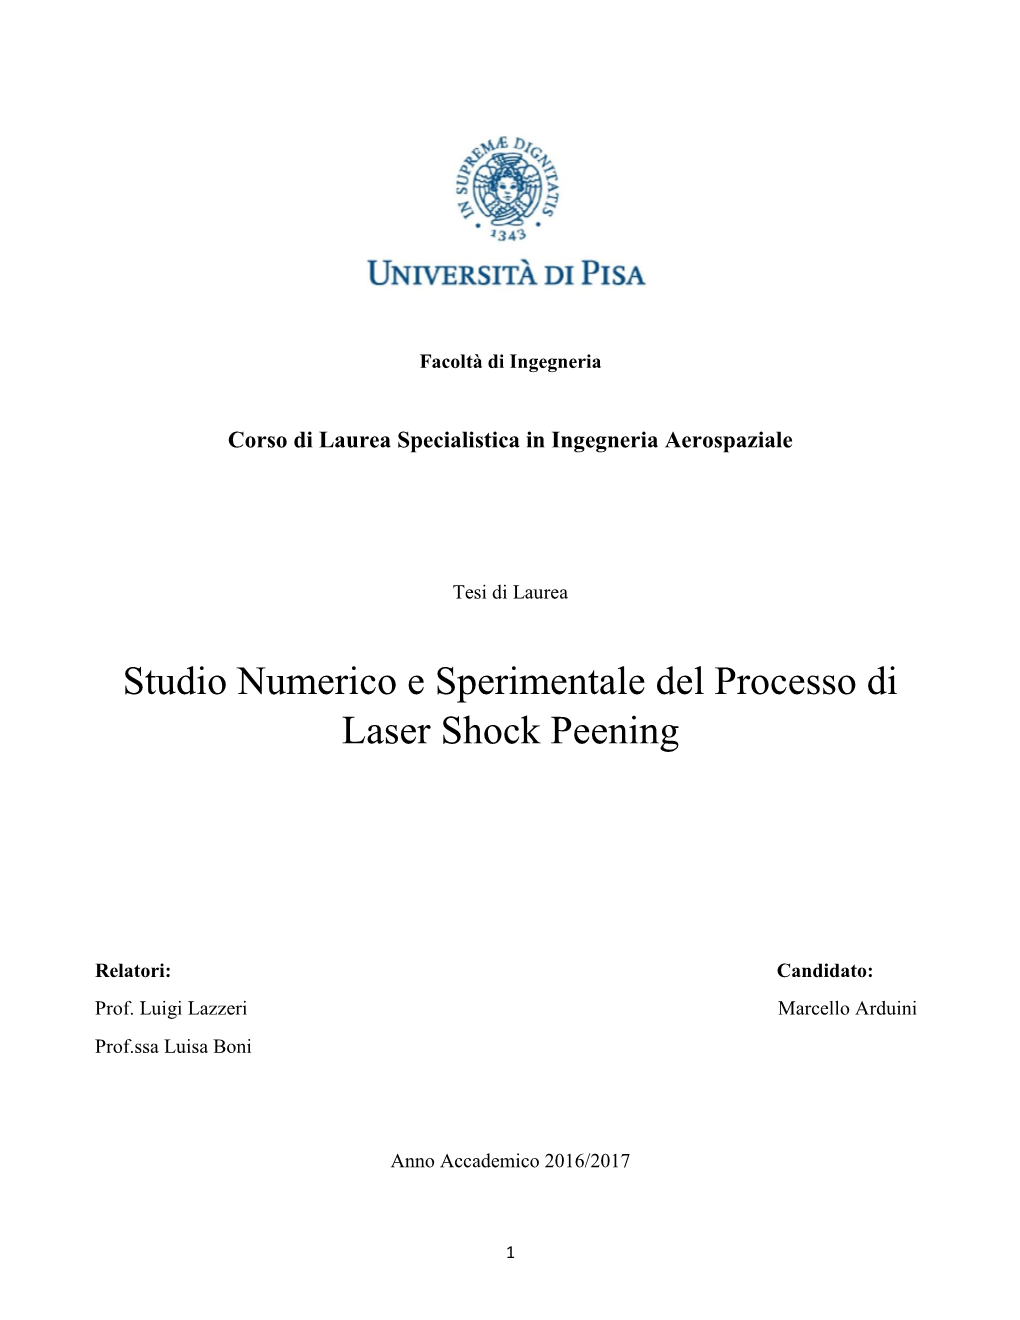 Studio Numerico E Sperimentale Del Processo Di Laser Shock Peening